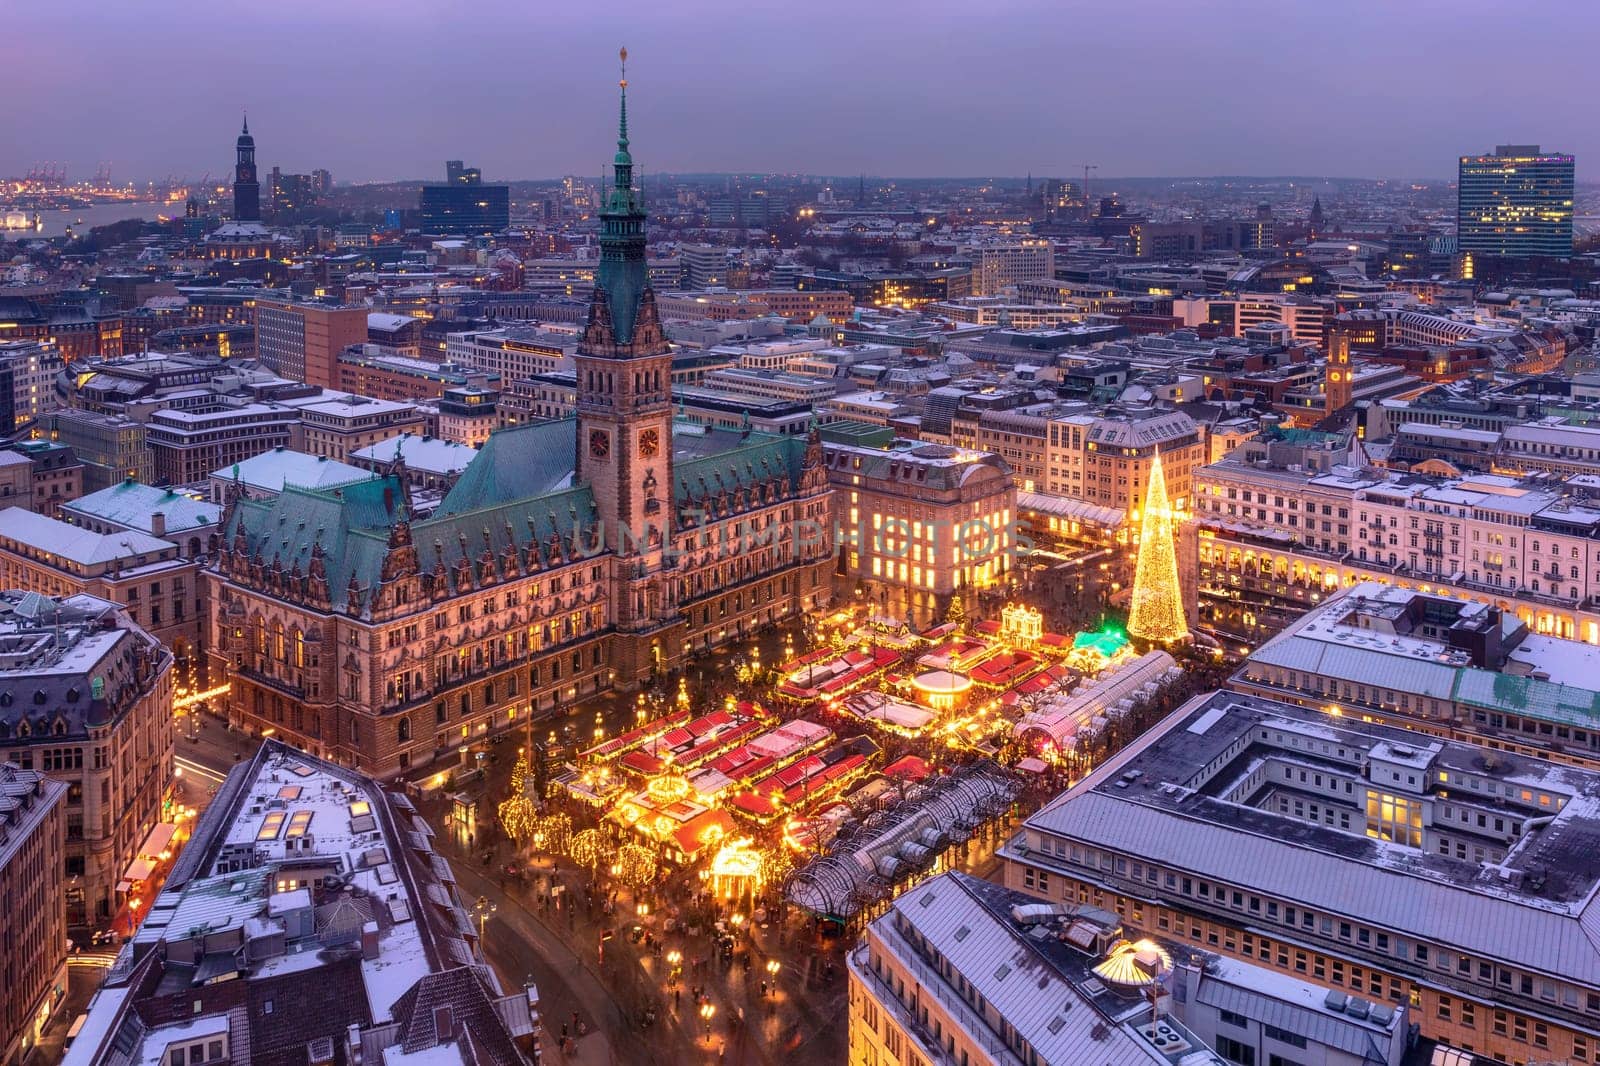 Historic Christmas market on Rathausmarkt in downtown Hamburg, Germany. by zhu_zhu